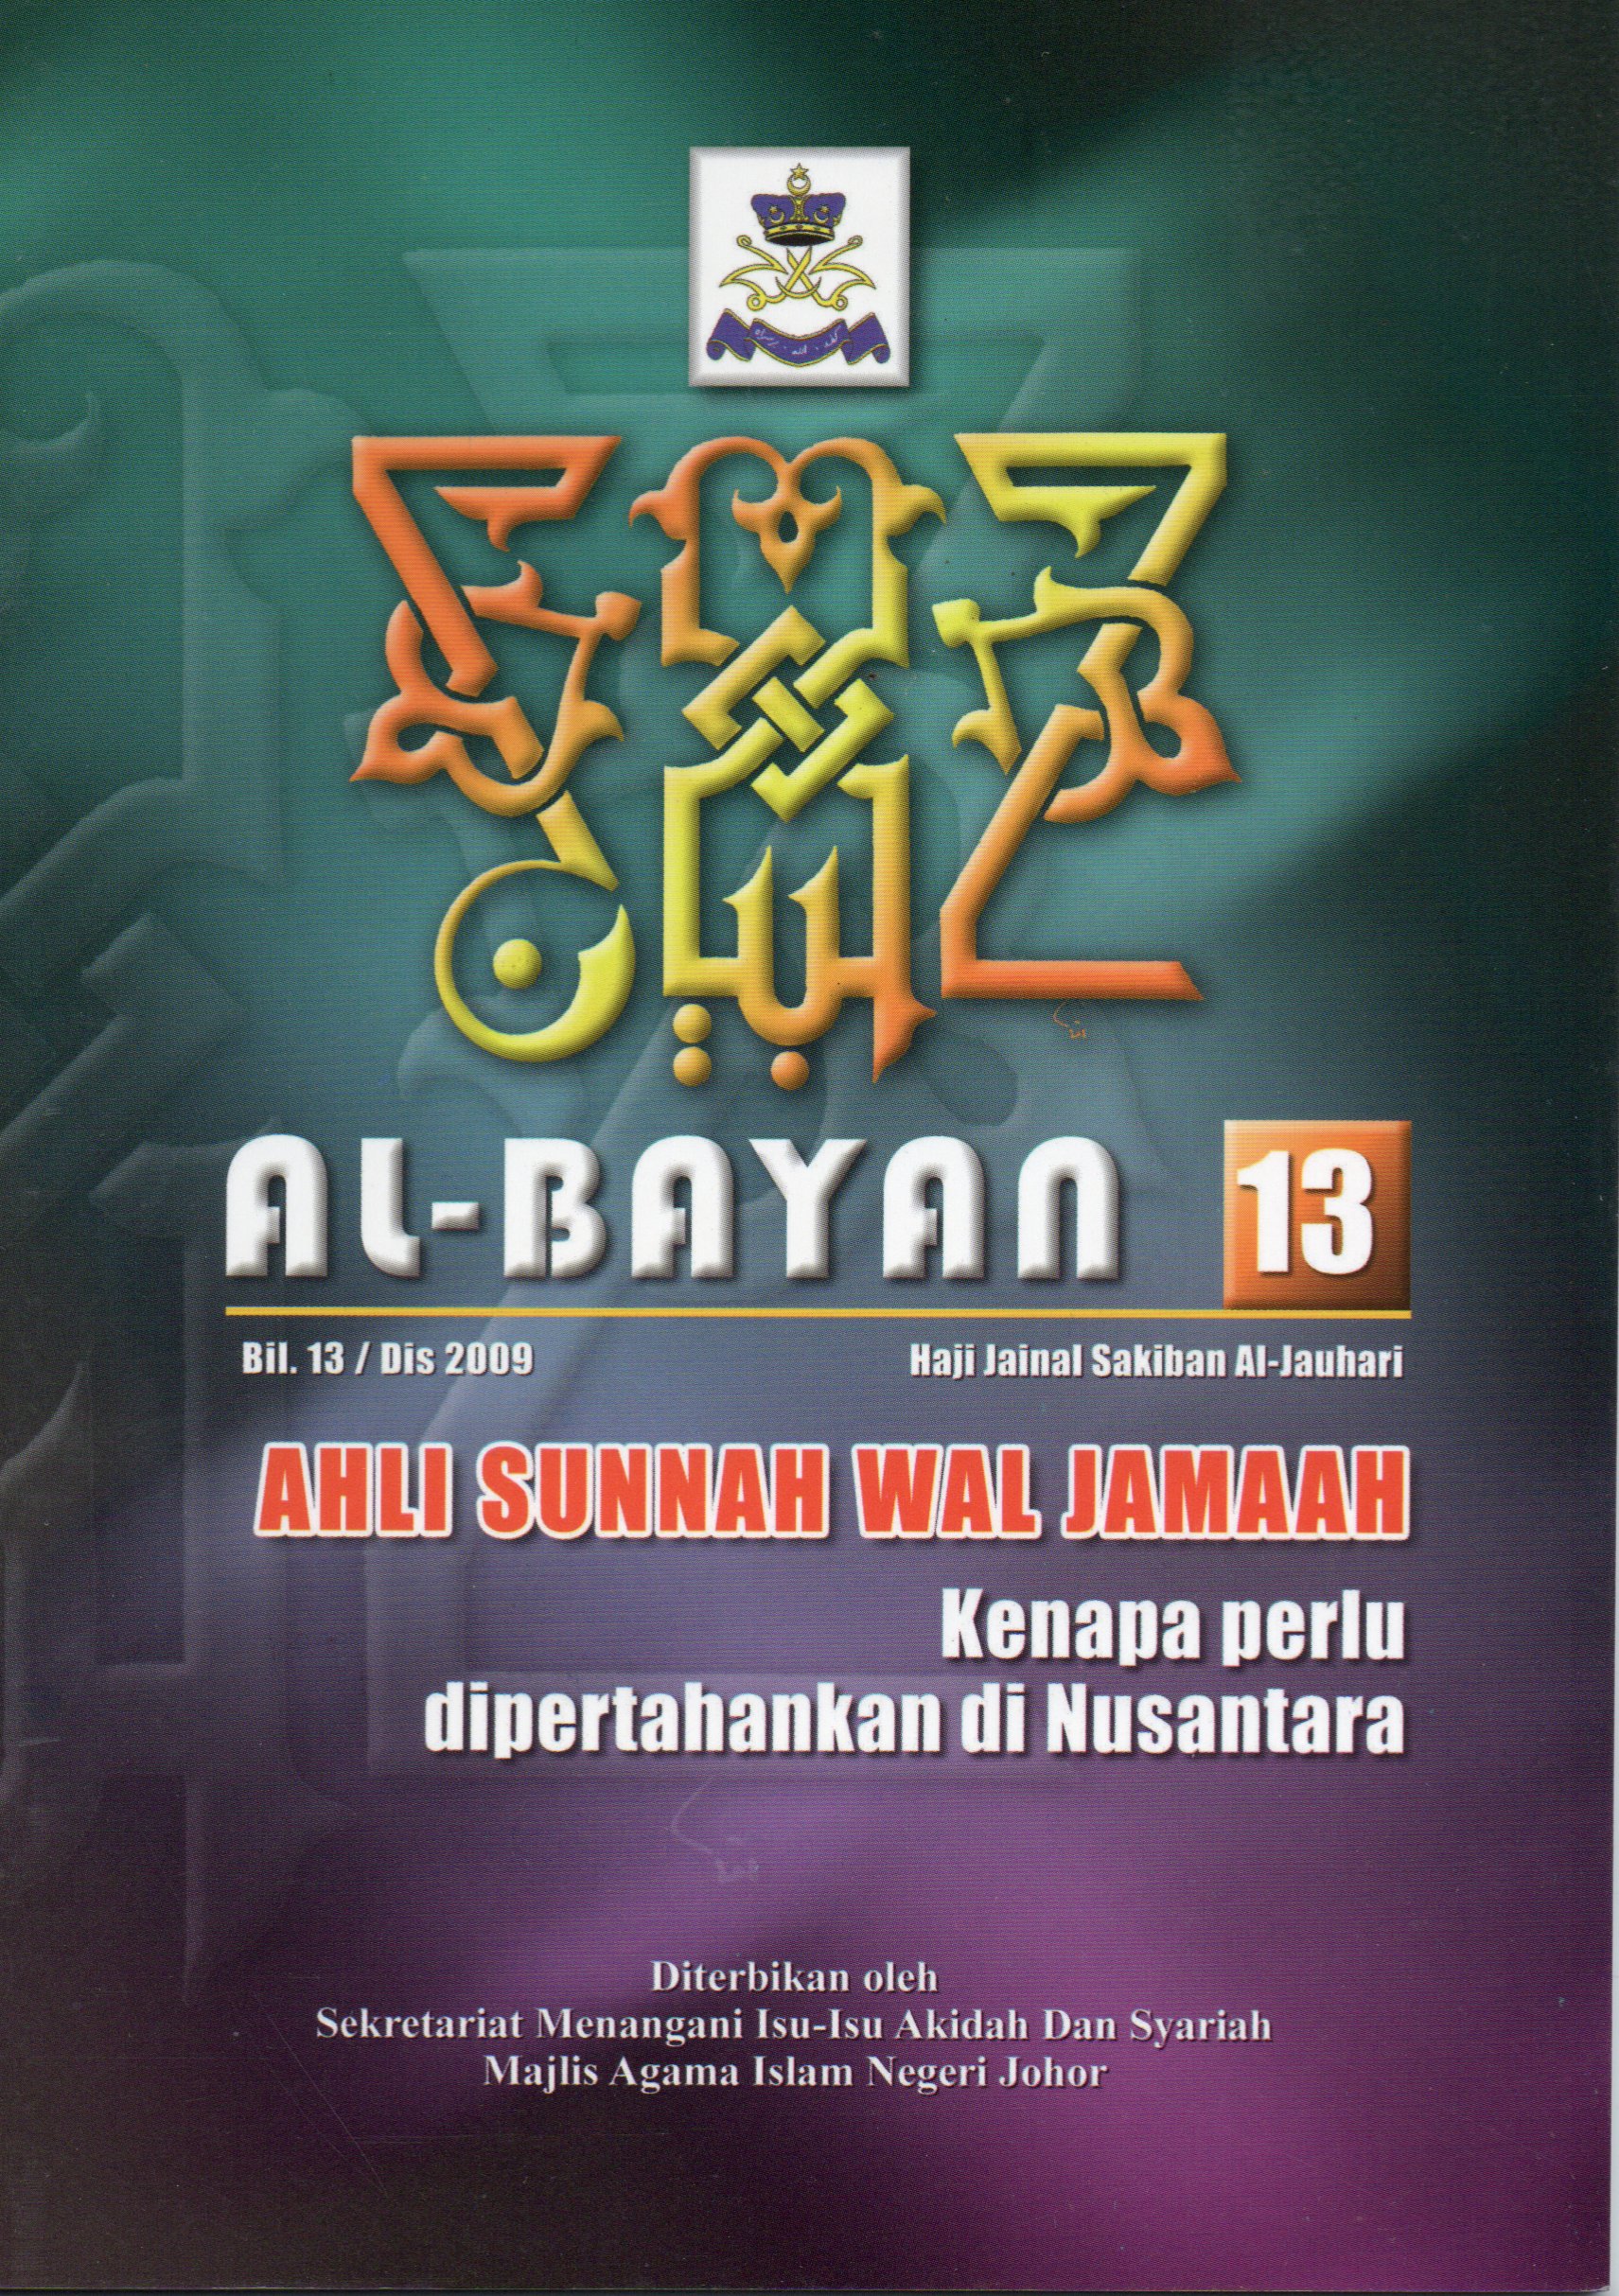 Al-Bayan 13: ahli sunnah wal jamaah kenapa perlu dipertahankan di nusantara